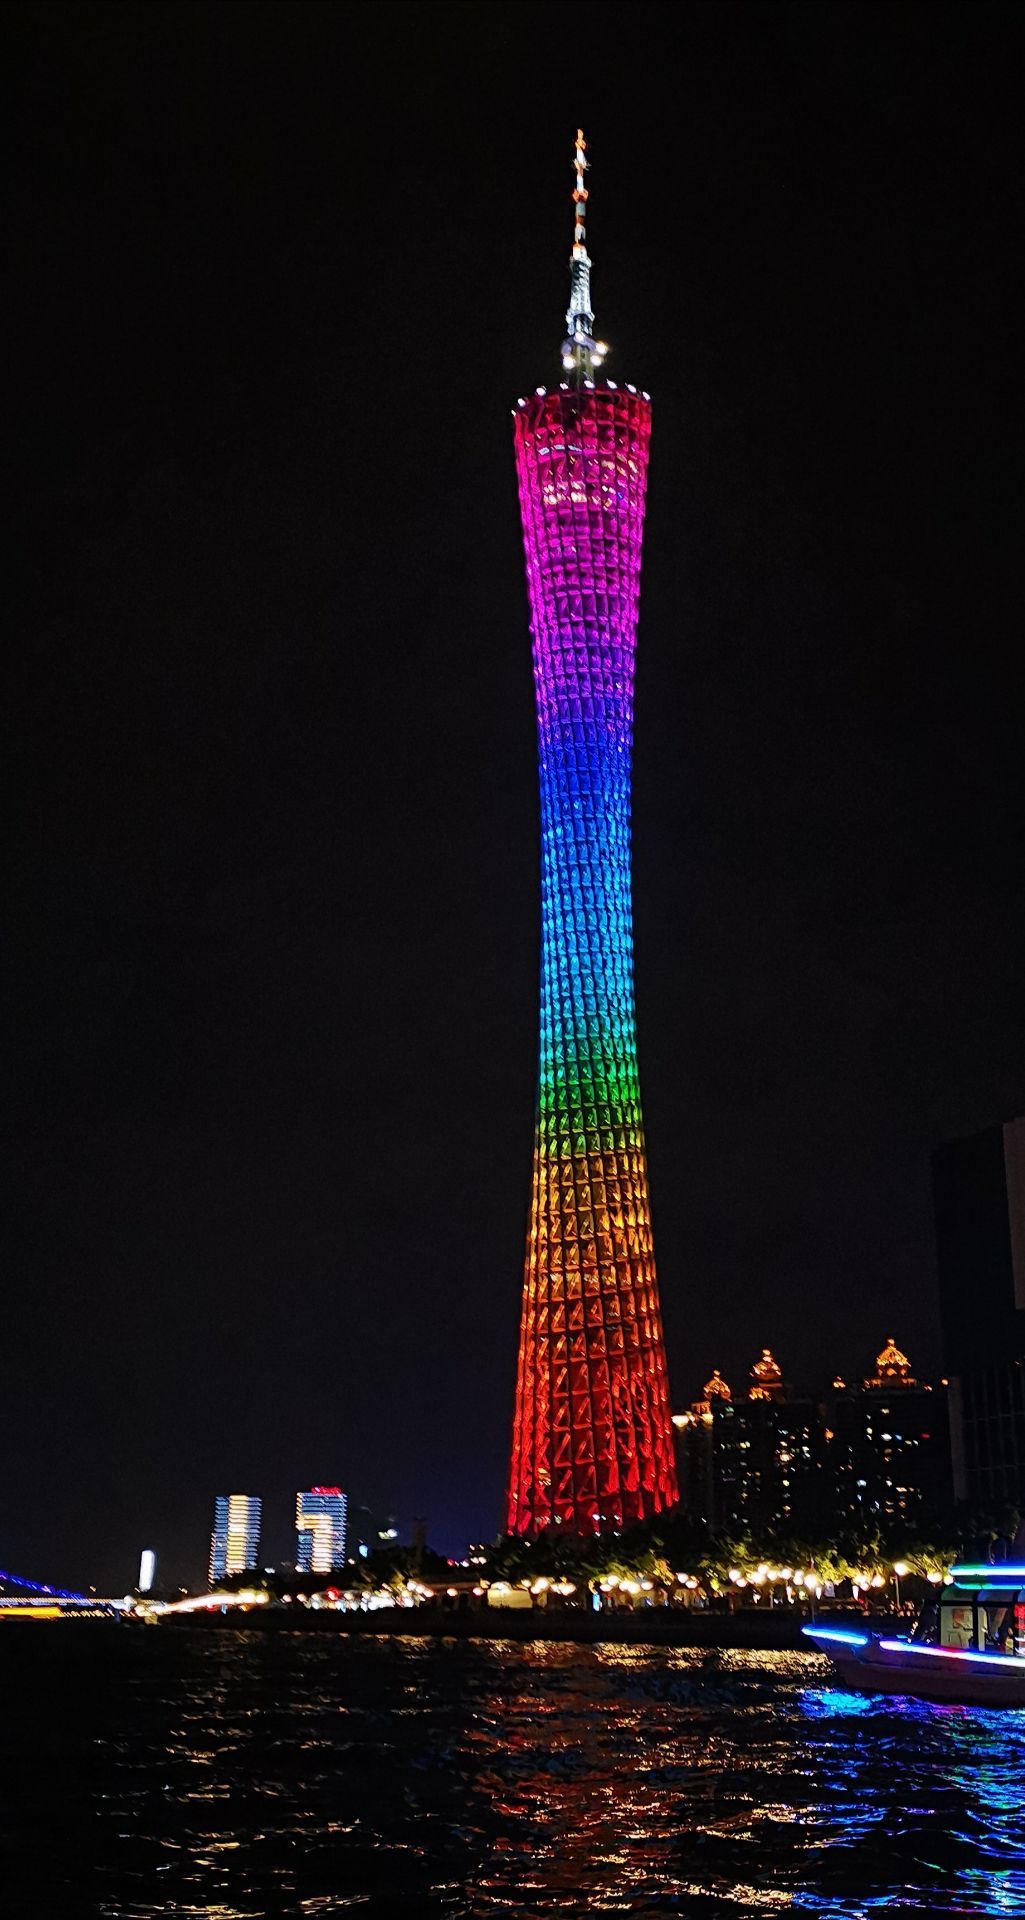 值得一去,夜晚的广州塔更加漂亮! 2020